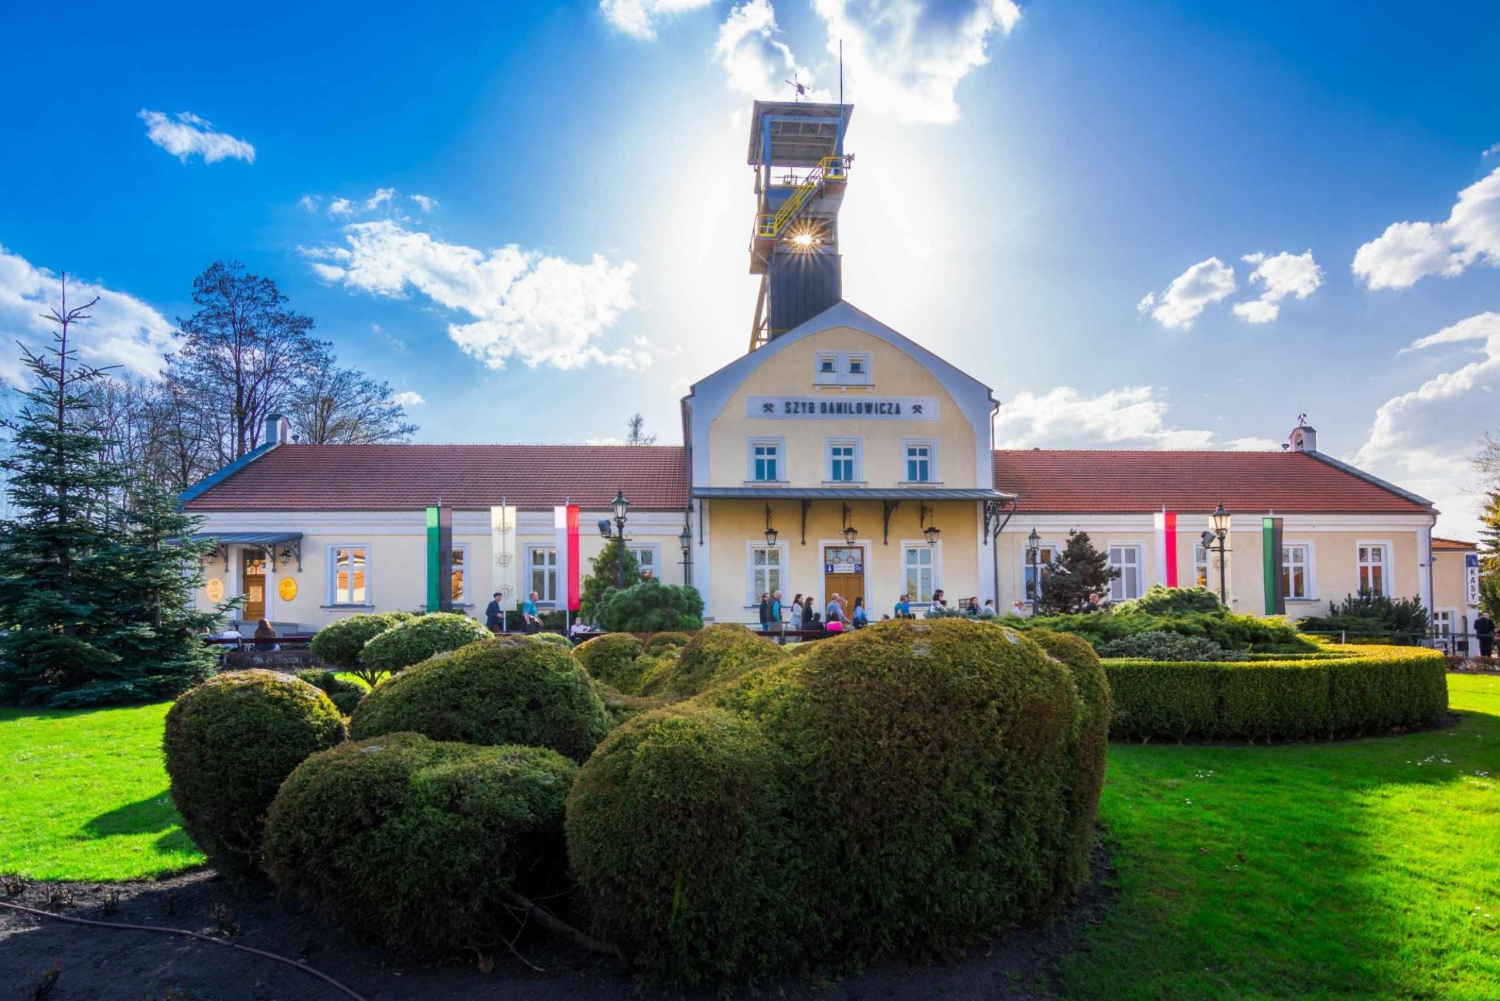 Mina de sal de Wieliczka: Tour guiado a partir de Cracóvia